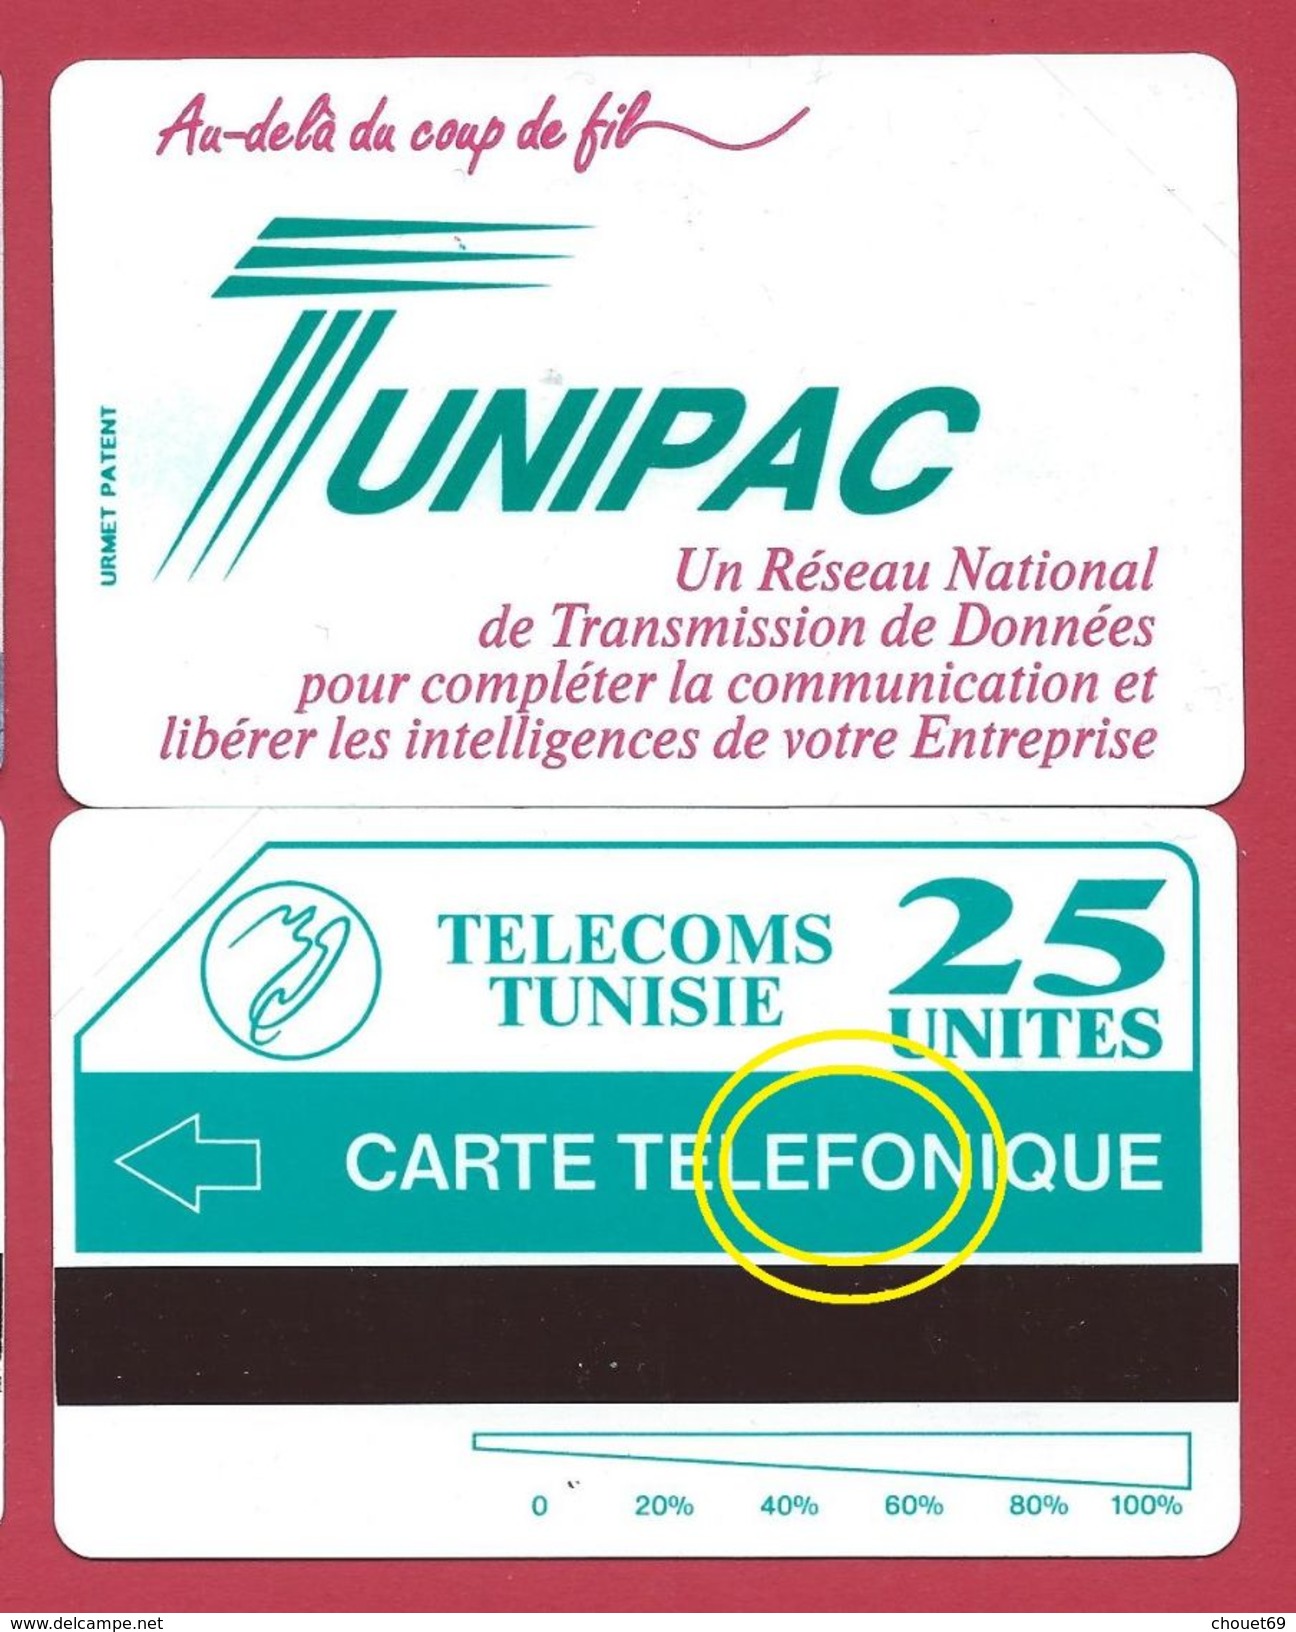 TUNISIE BAZAR erreur TELEFONIQUE au lieu de PH variété MINT URMET NEUVE 